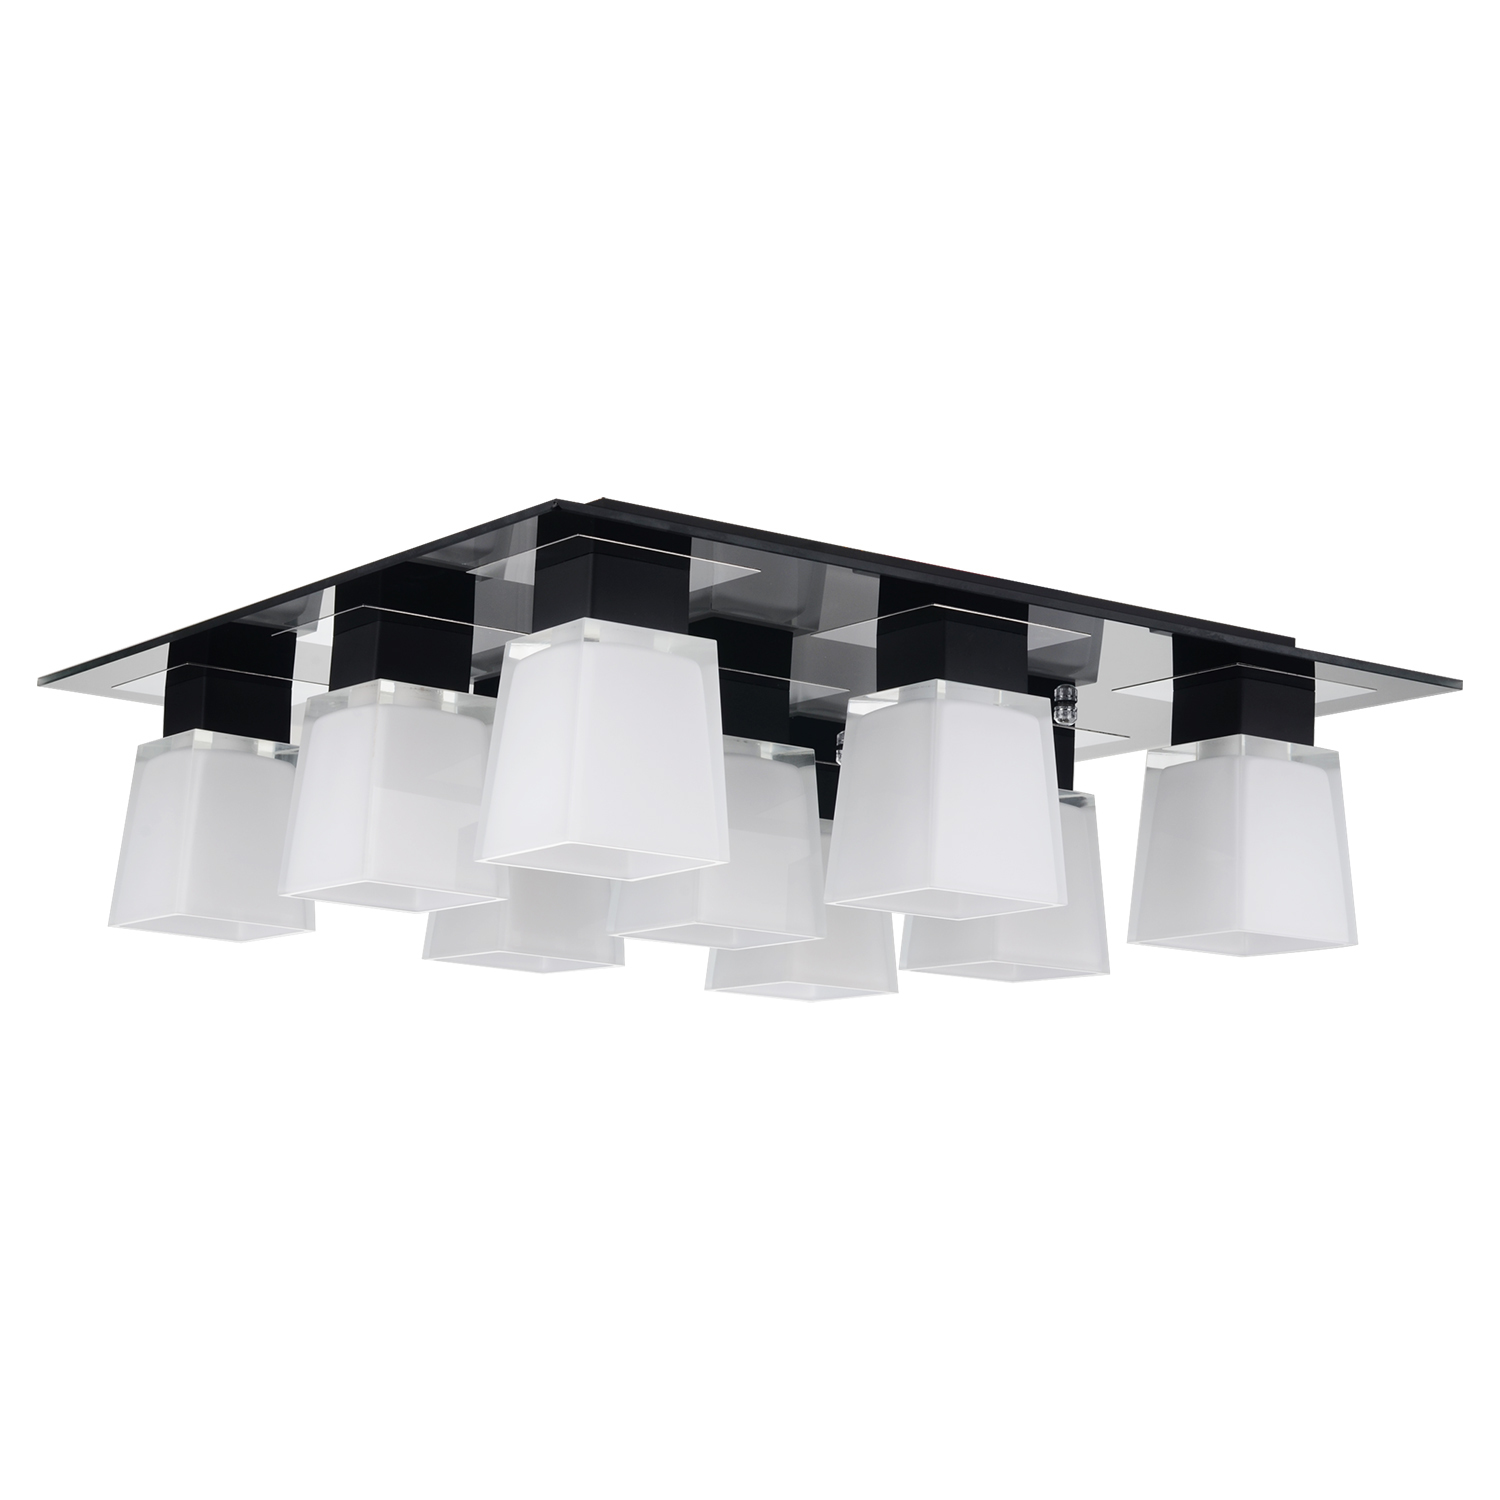 Потолочная люстра Lussole Loft Lente LSC-2507-09, IP21, 9xE14x40W, черный, белый, металл, стекло - фото 1